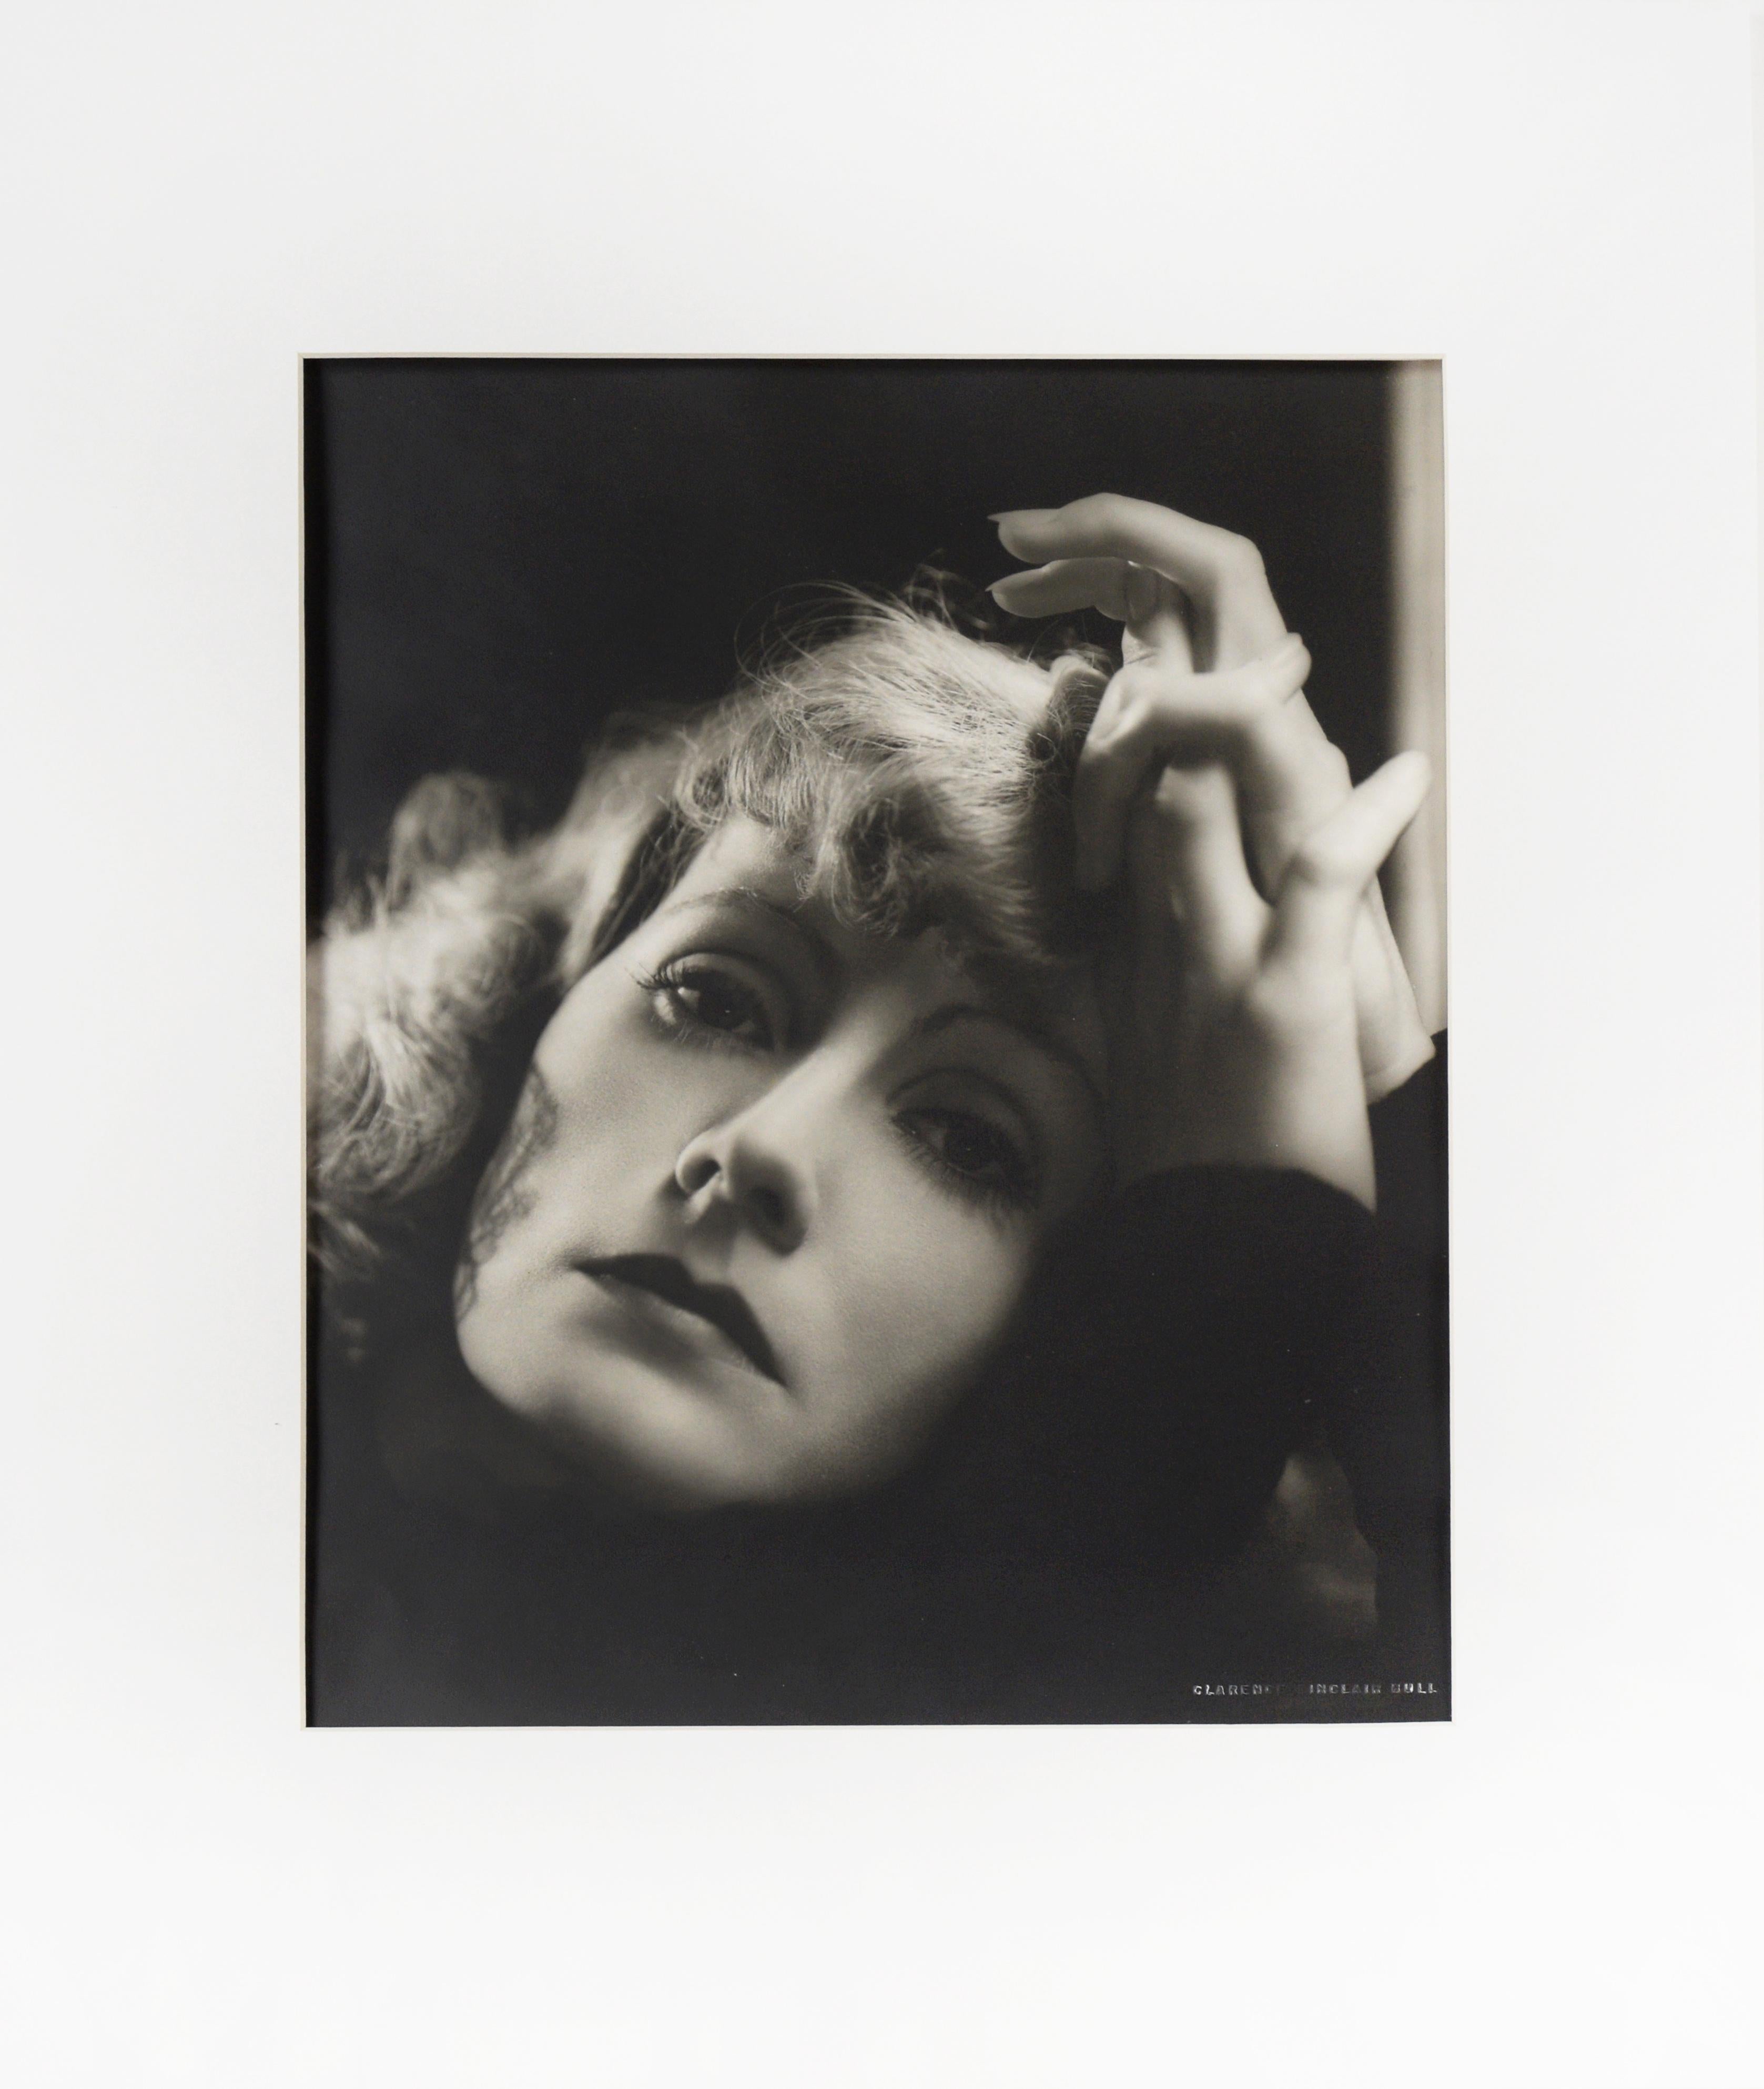 Greta Garbo „Her Rise And Fall #2“ - 1931 Fotografie von Clarence Sinclair Bull

 Eine Schwarz-Weiß-Fotografie von Clarence Sinclair Bull (Amerikaner, 1896-1979), mattes Finish, doppelt gewichtetes Papier, die eine Aufnahme der